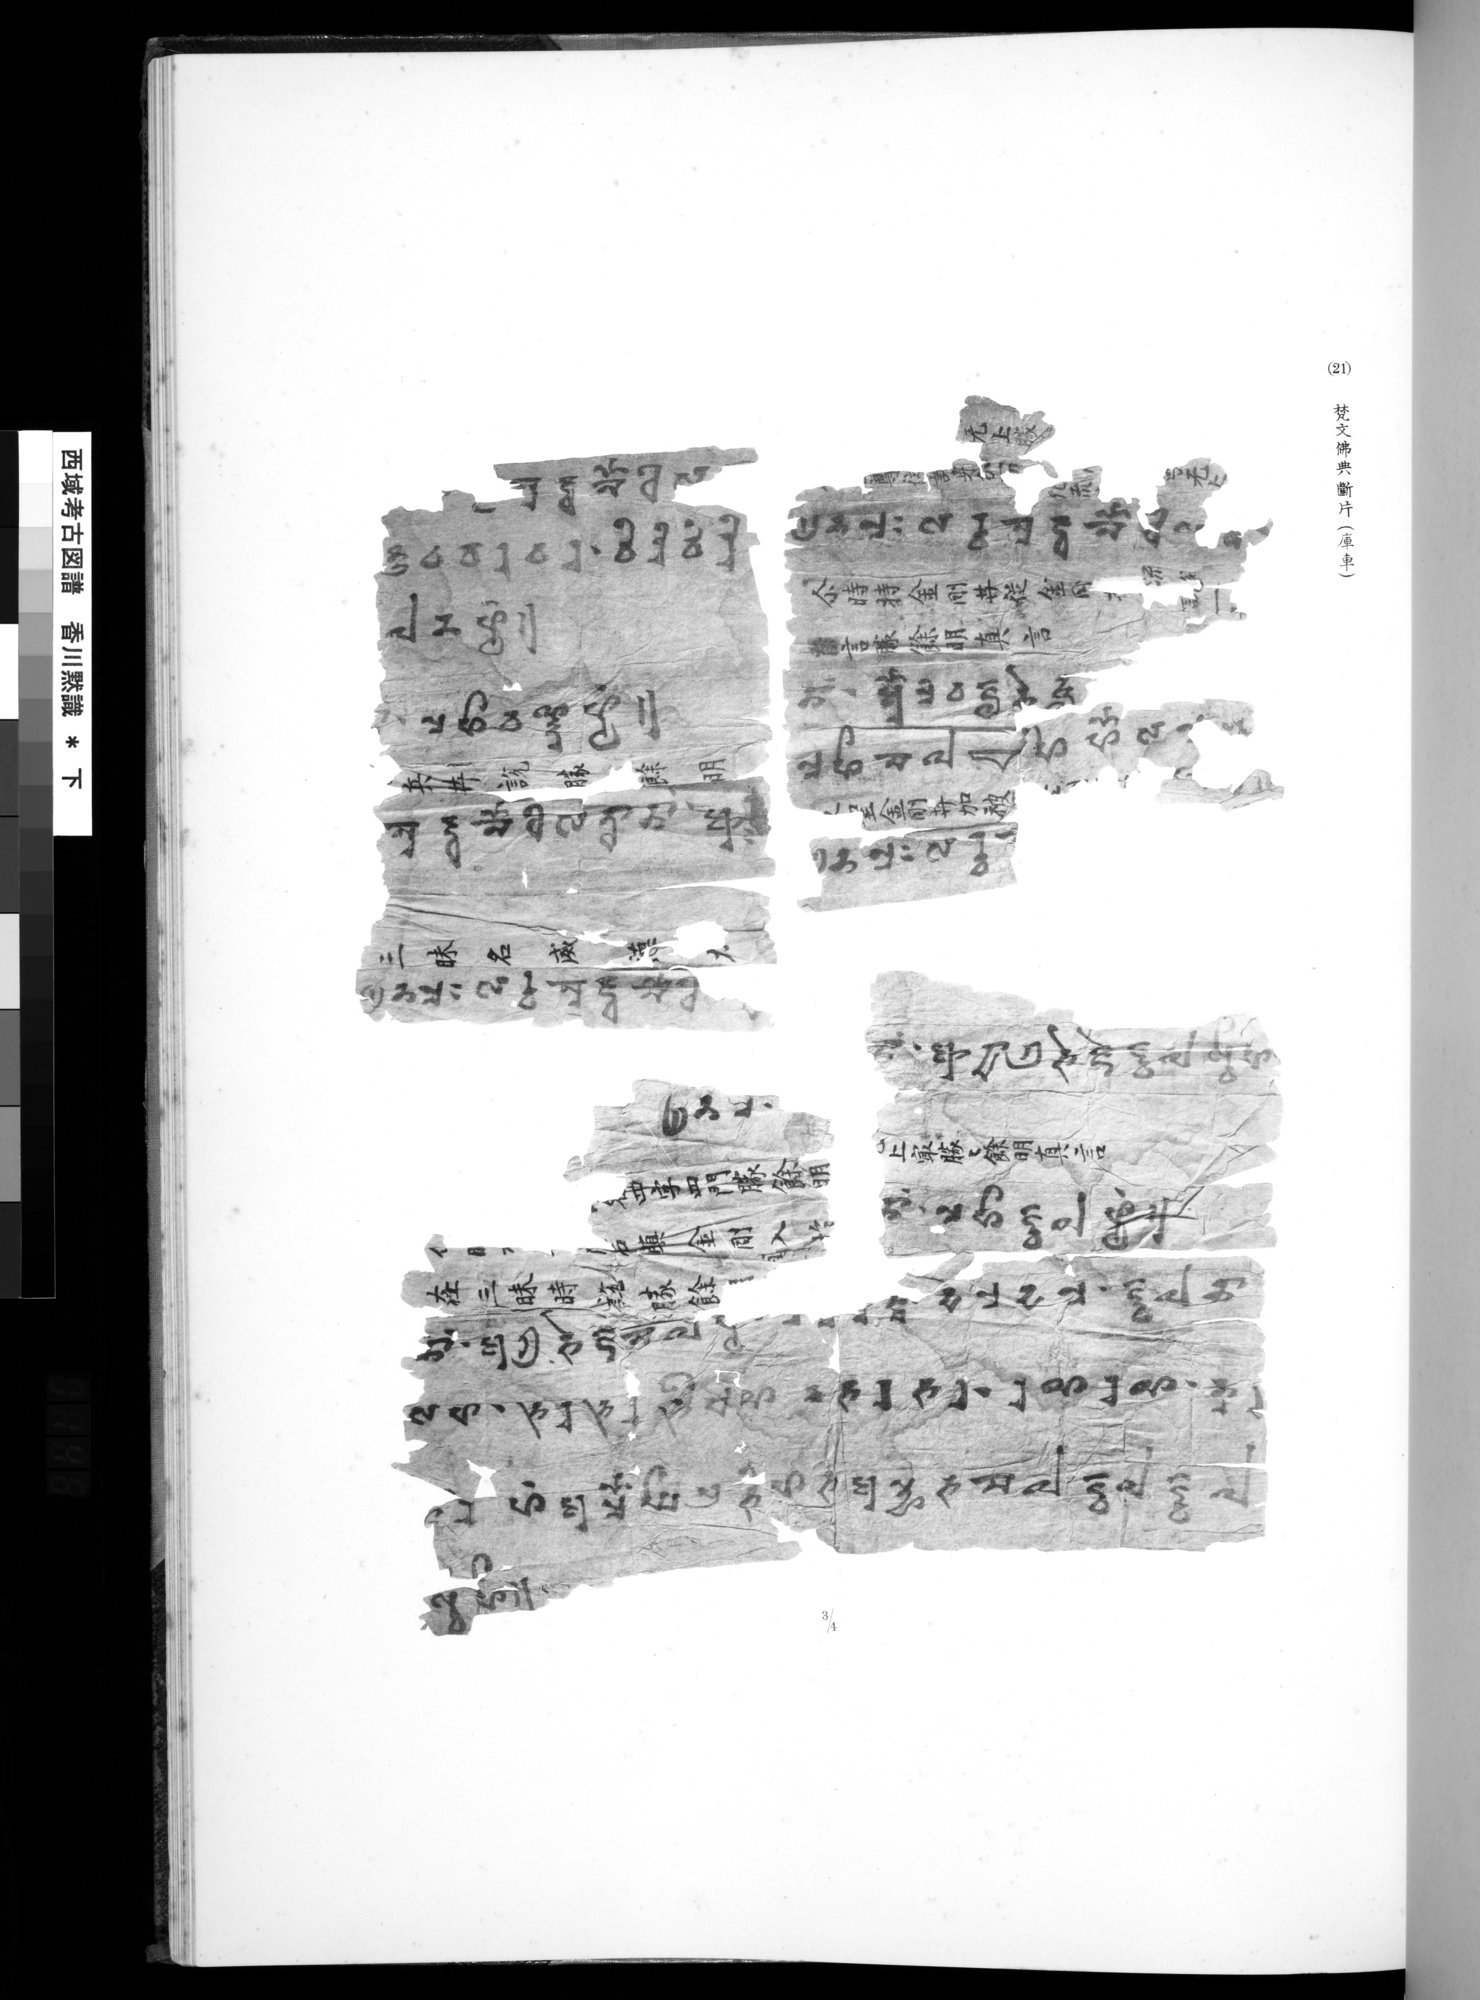 西域考古図譜 : vol.2 / Page 295 (Grayscale High Resolution Image)